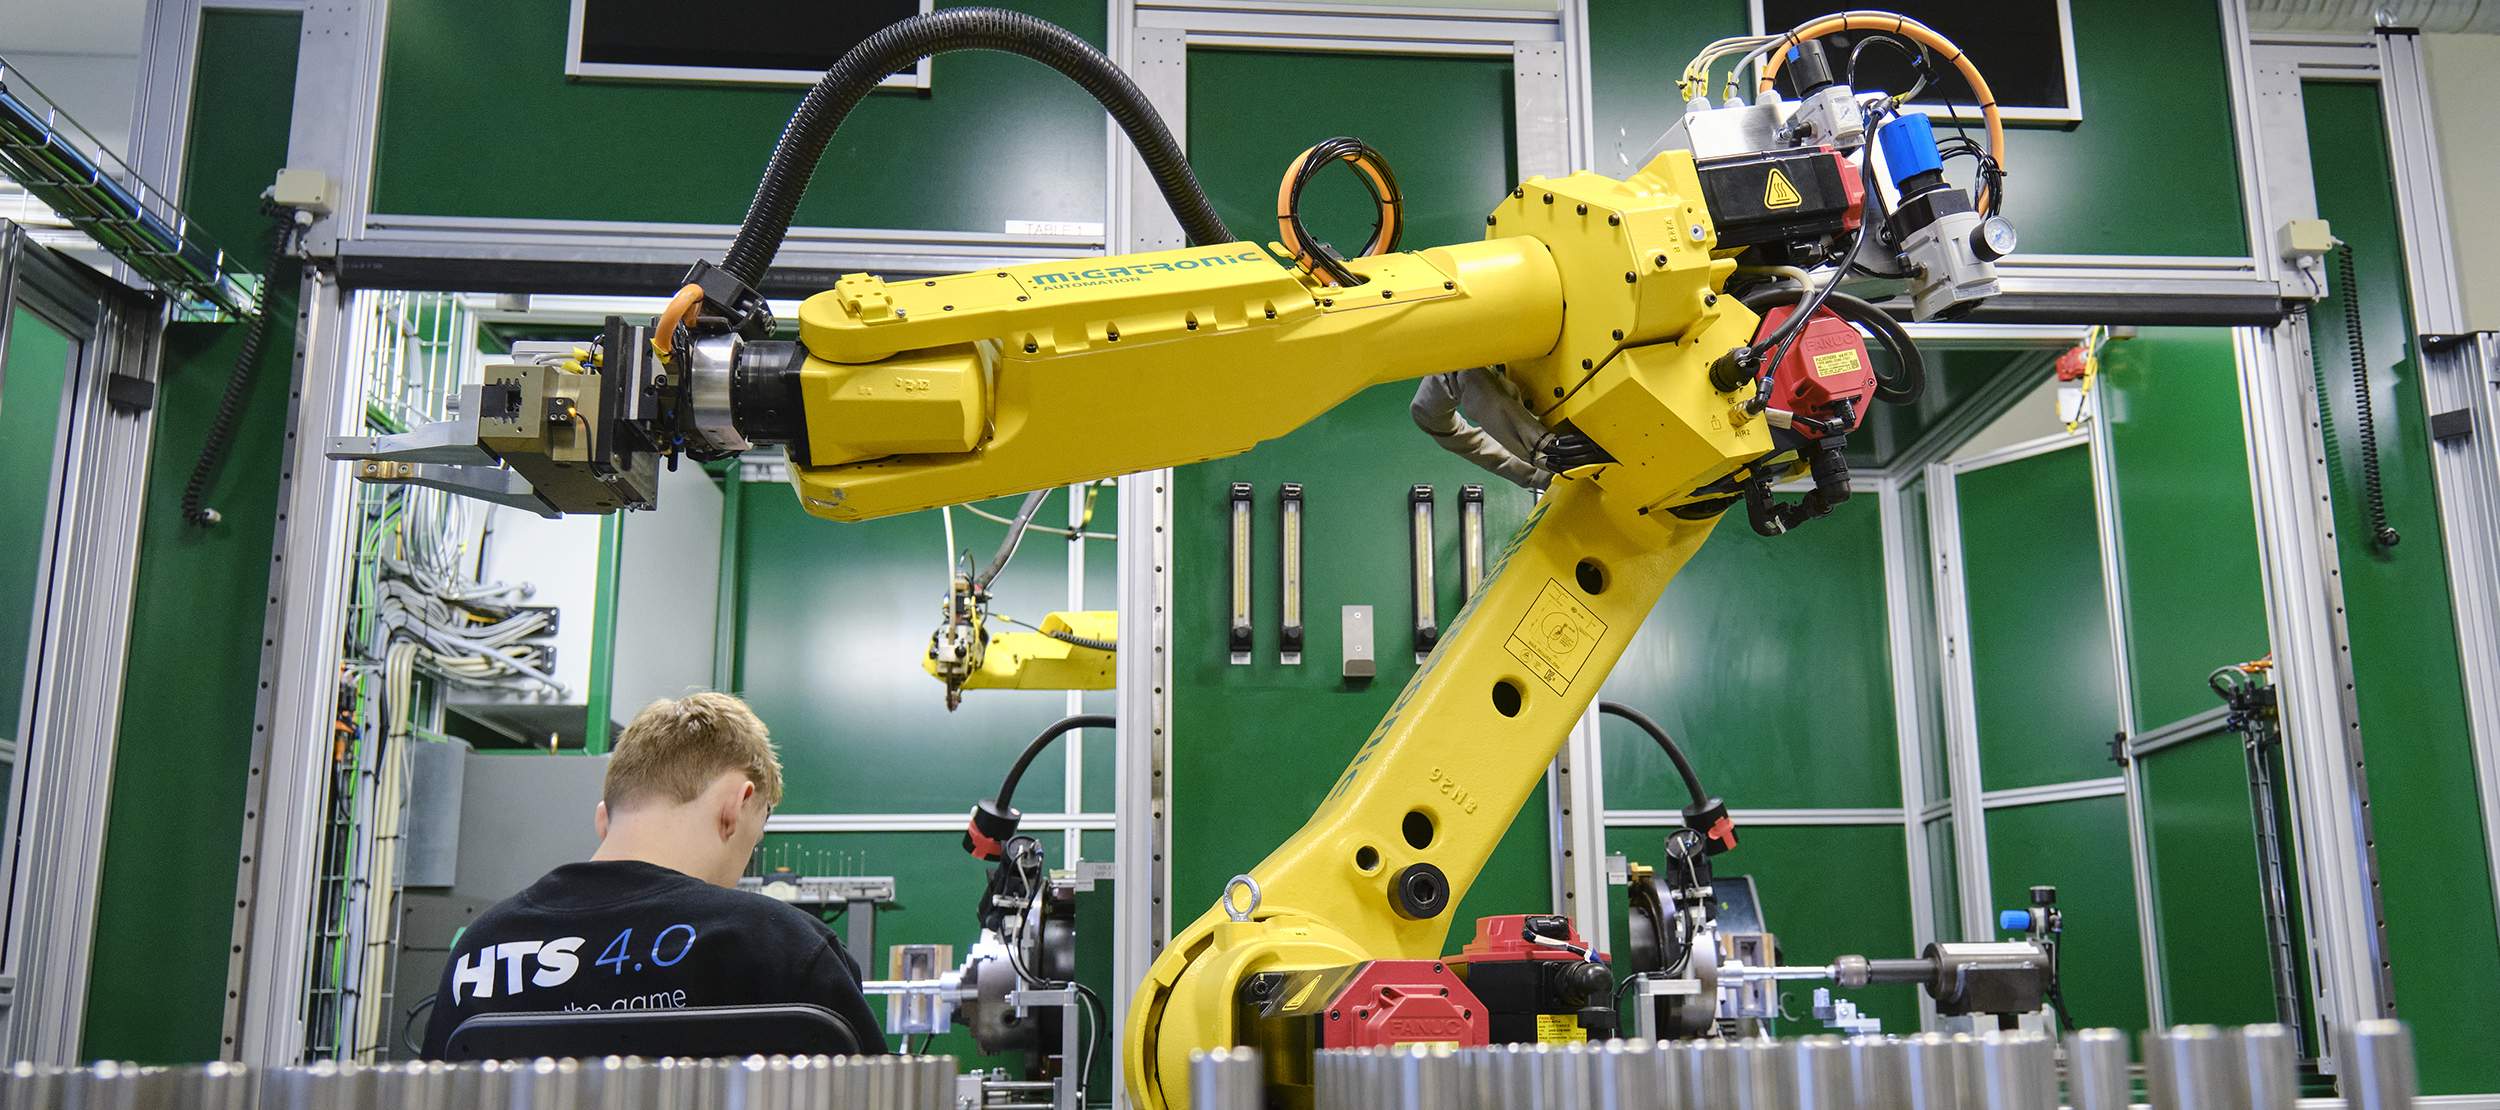 Bilde som viser en robotarm i arbeid